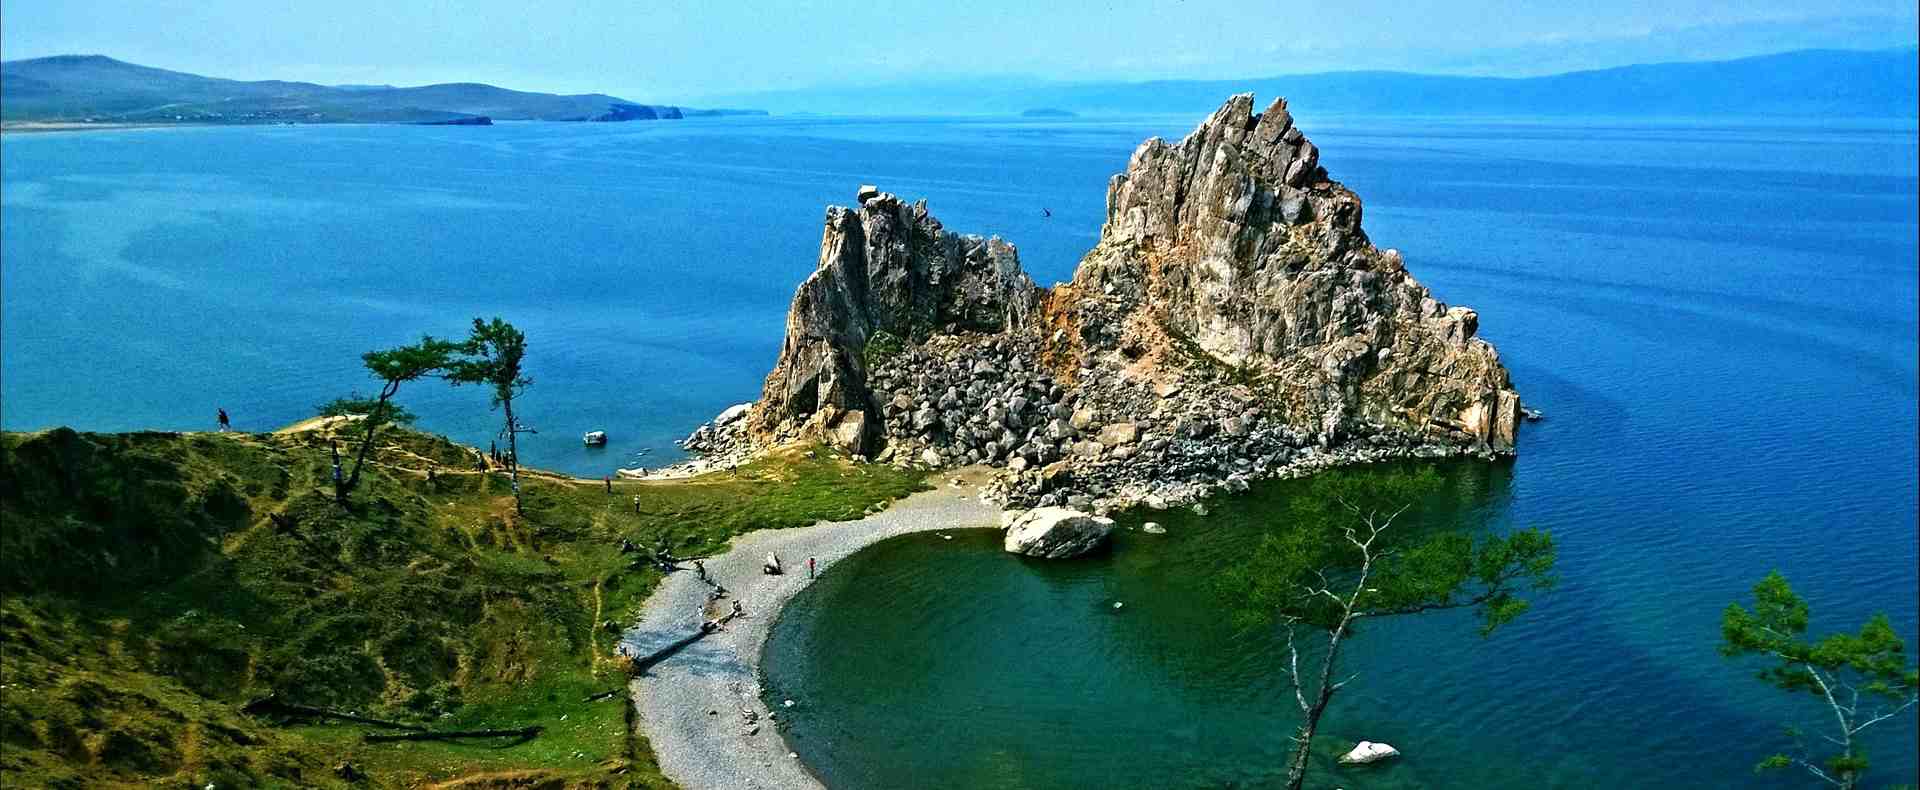 Lake_Baikal